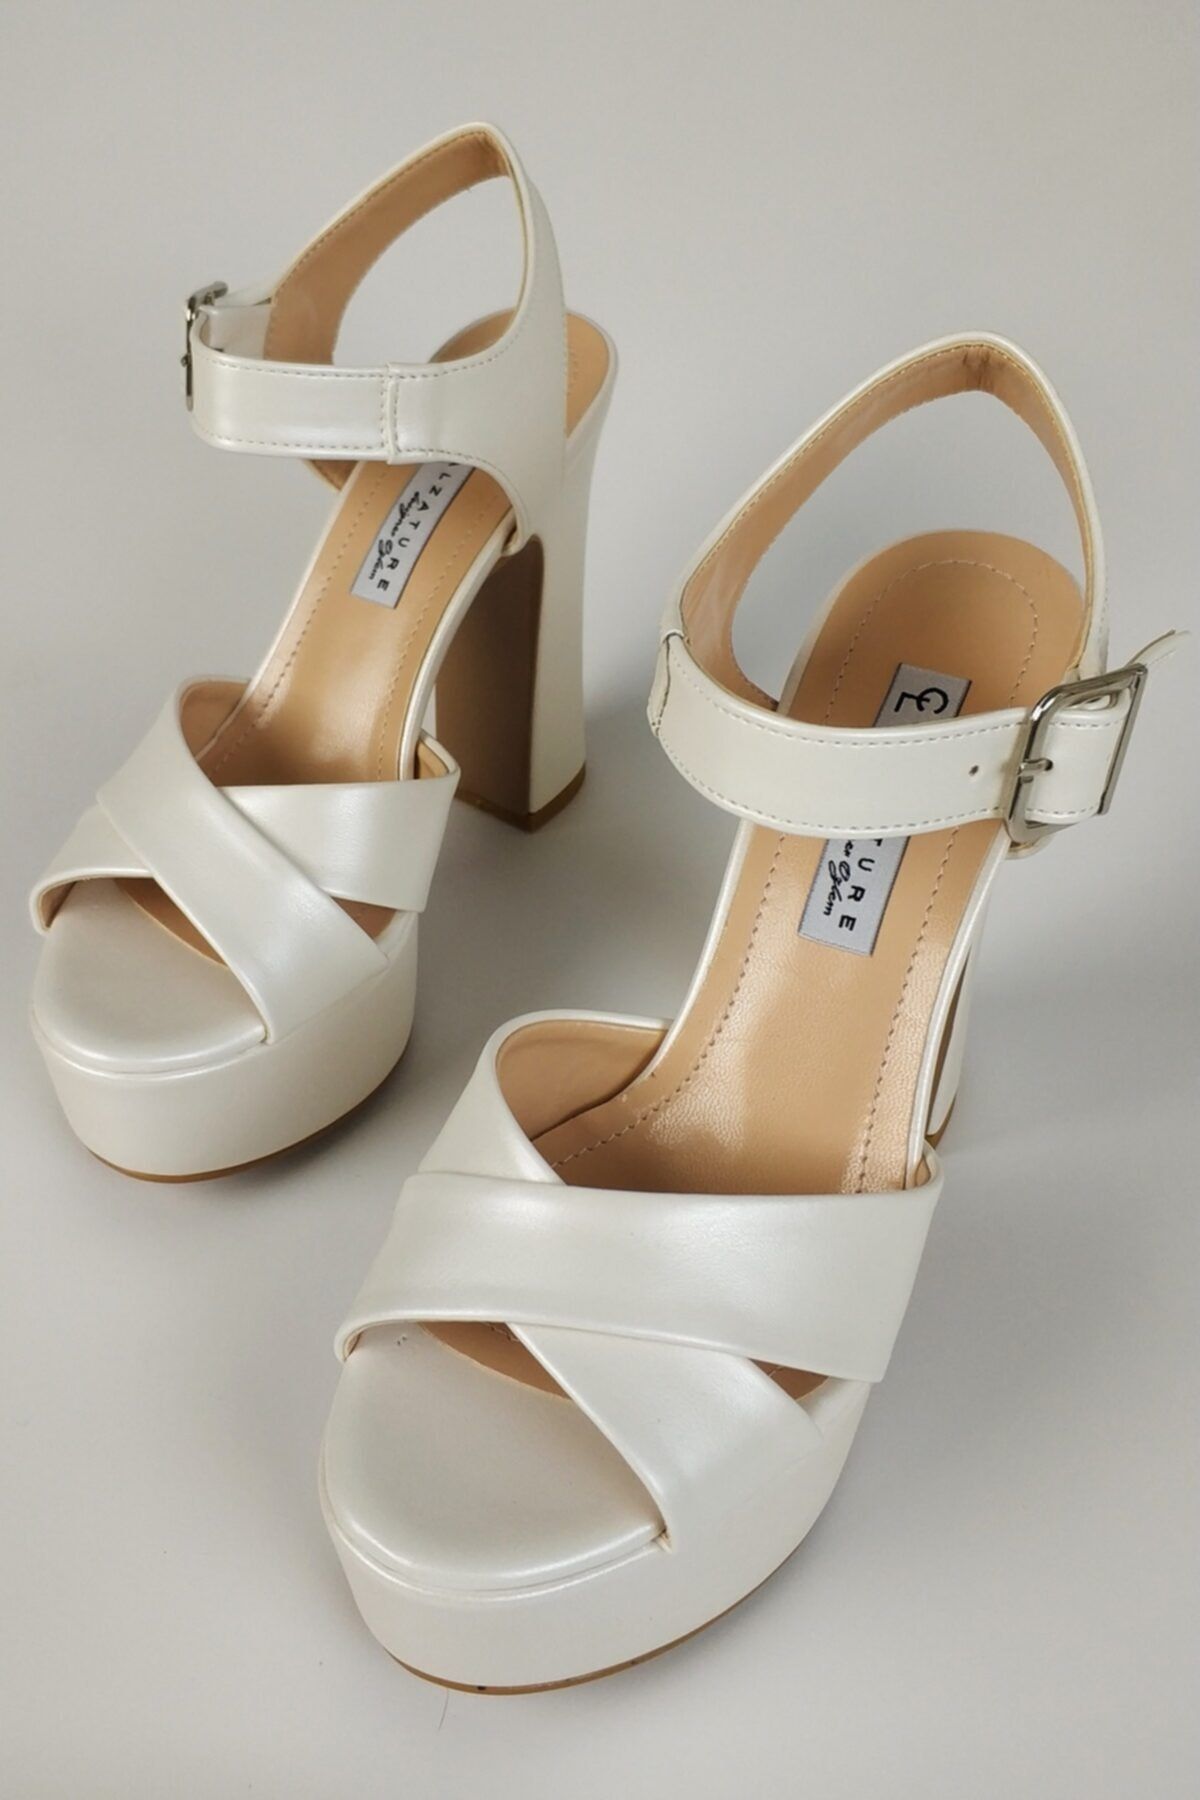 CL CALZATURE Kadın Sedef Kalın Topuk Platformlu Kadın  Ayakkabı